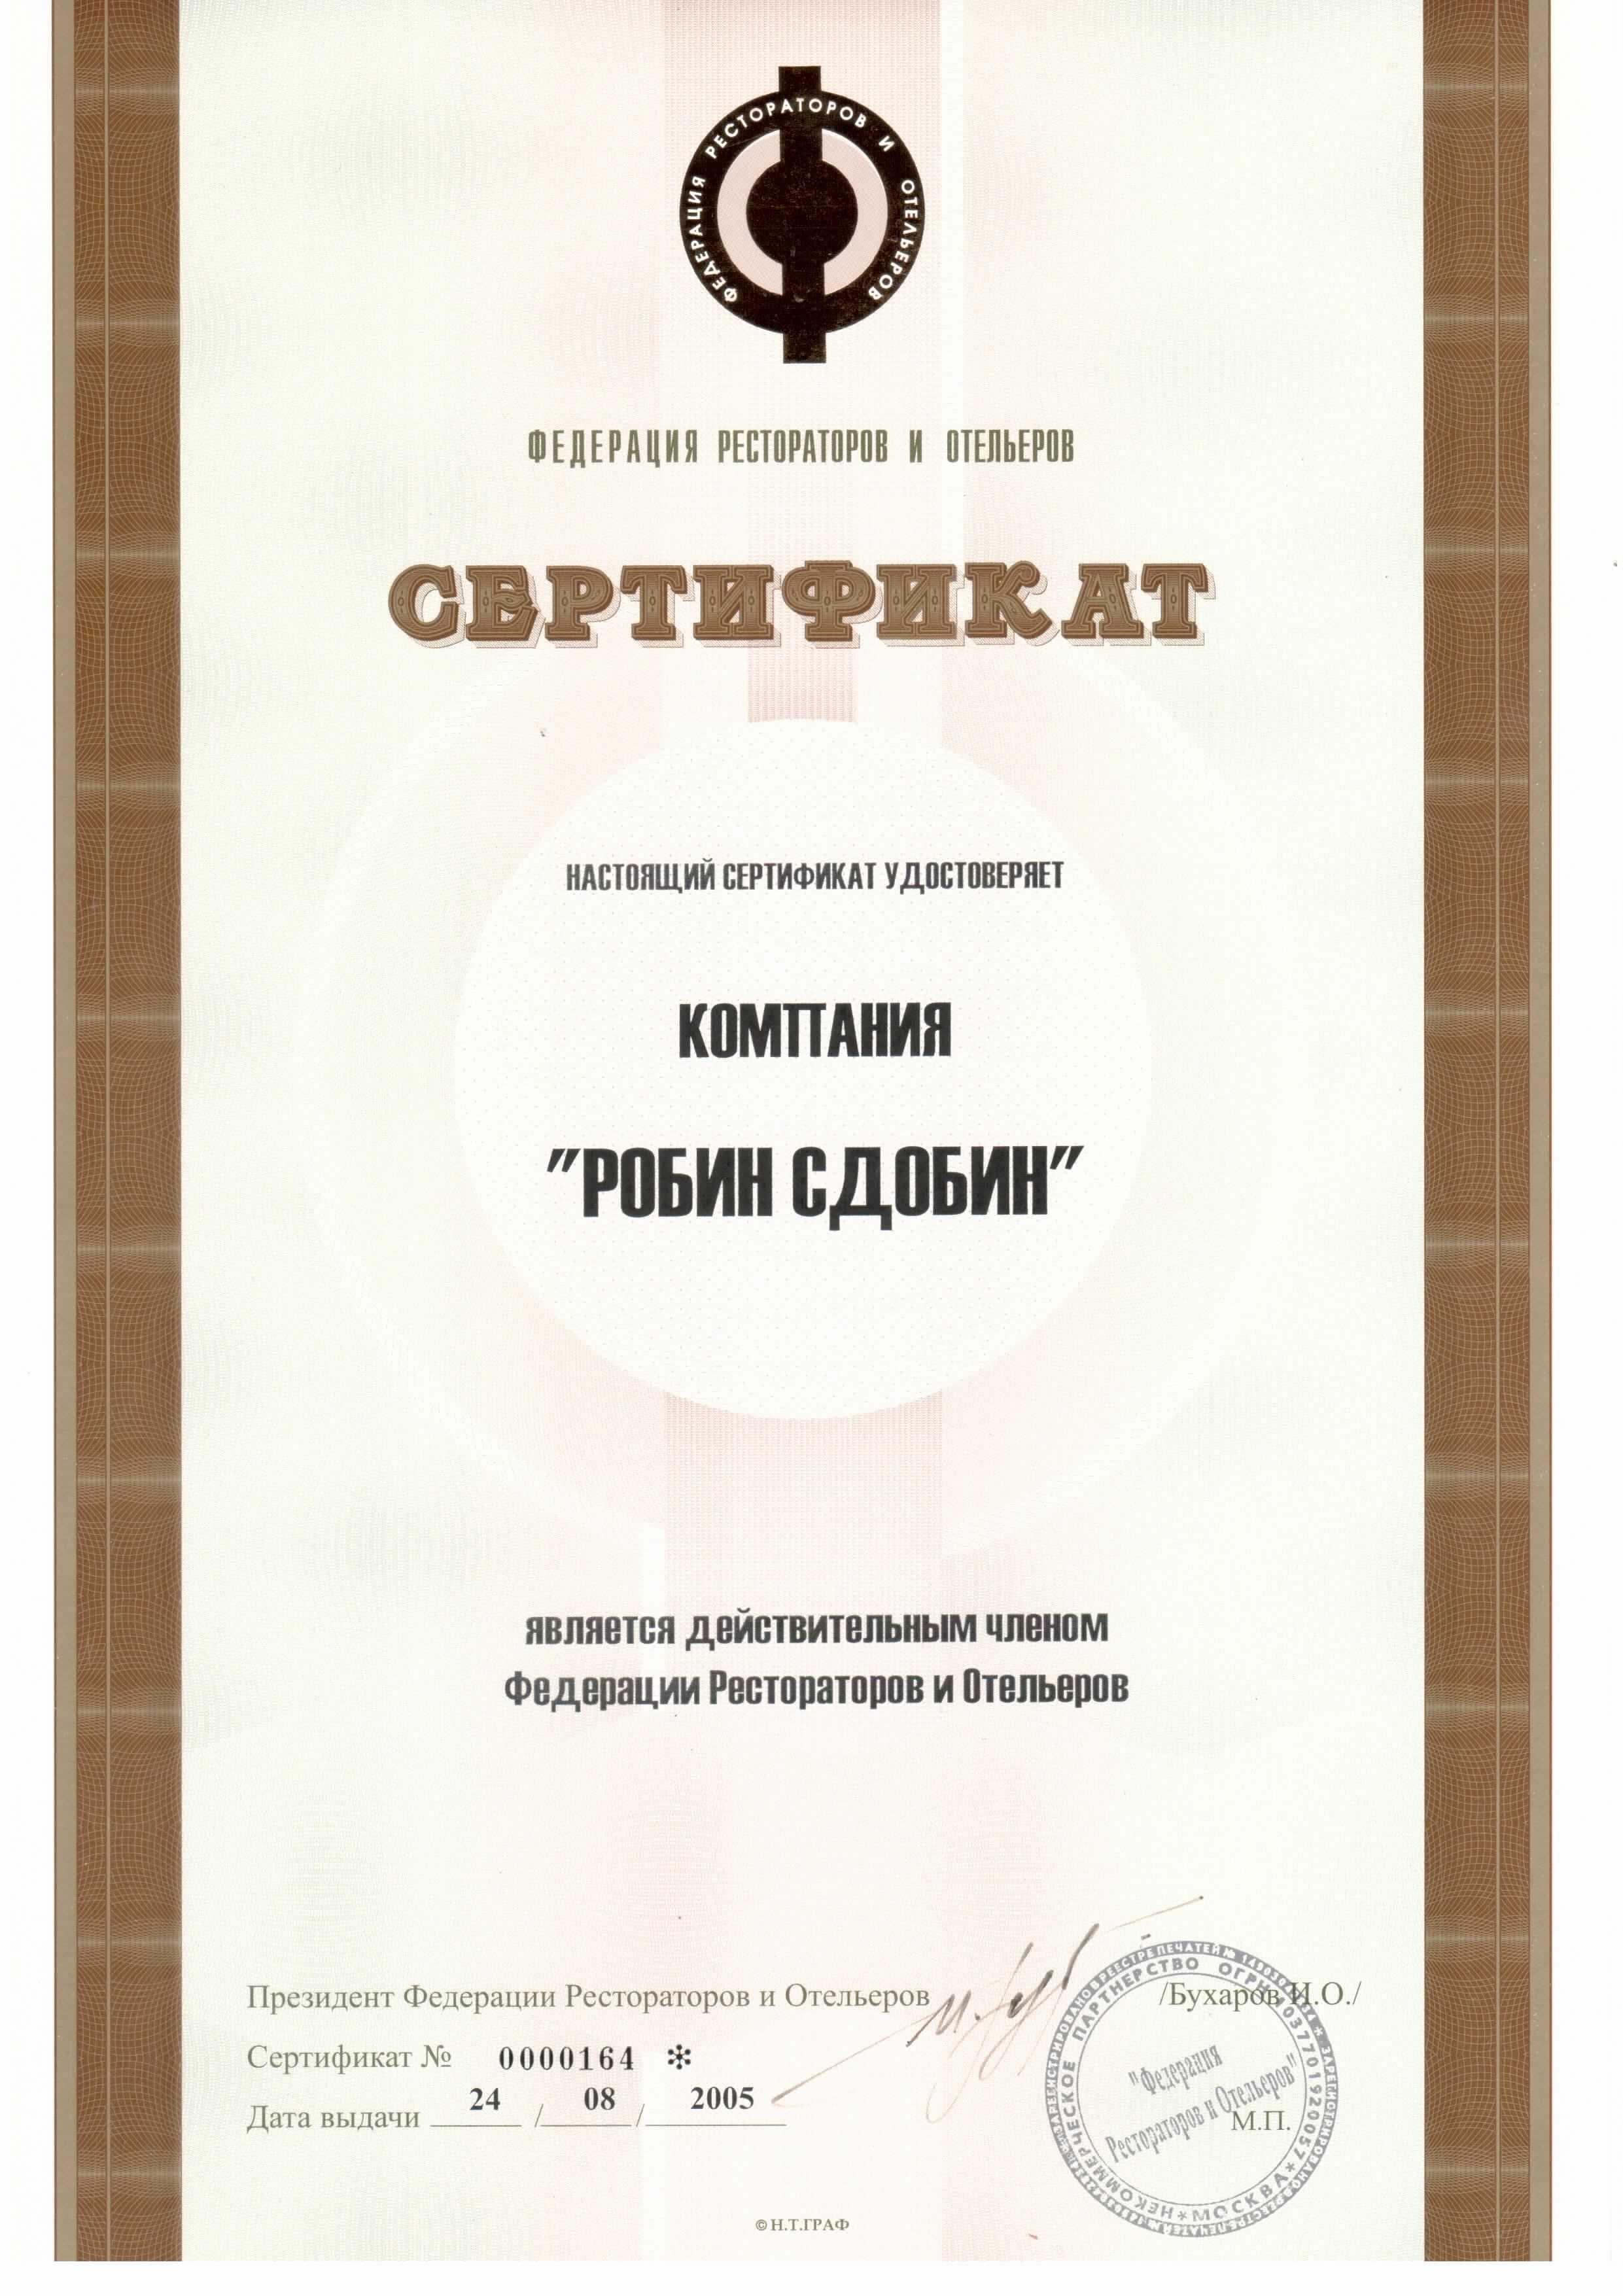 Сертификат федерация рестораторов и отельеров